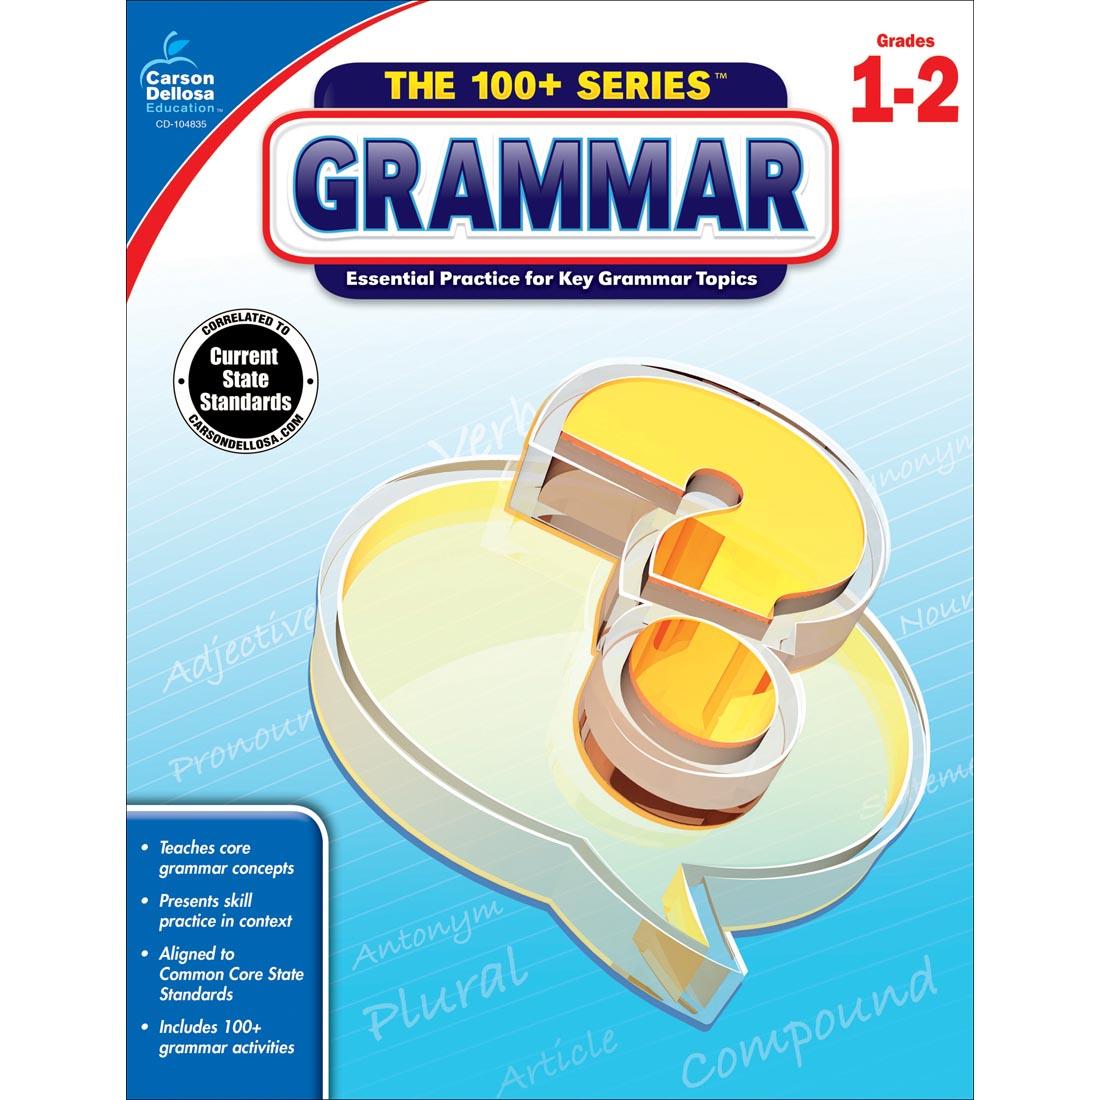 The 100+ Series Grammar by Carson Dellosa Grades 1-2